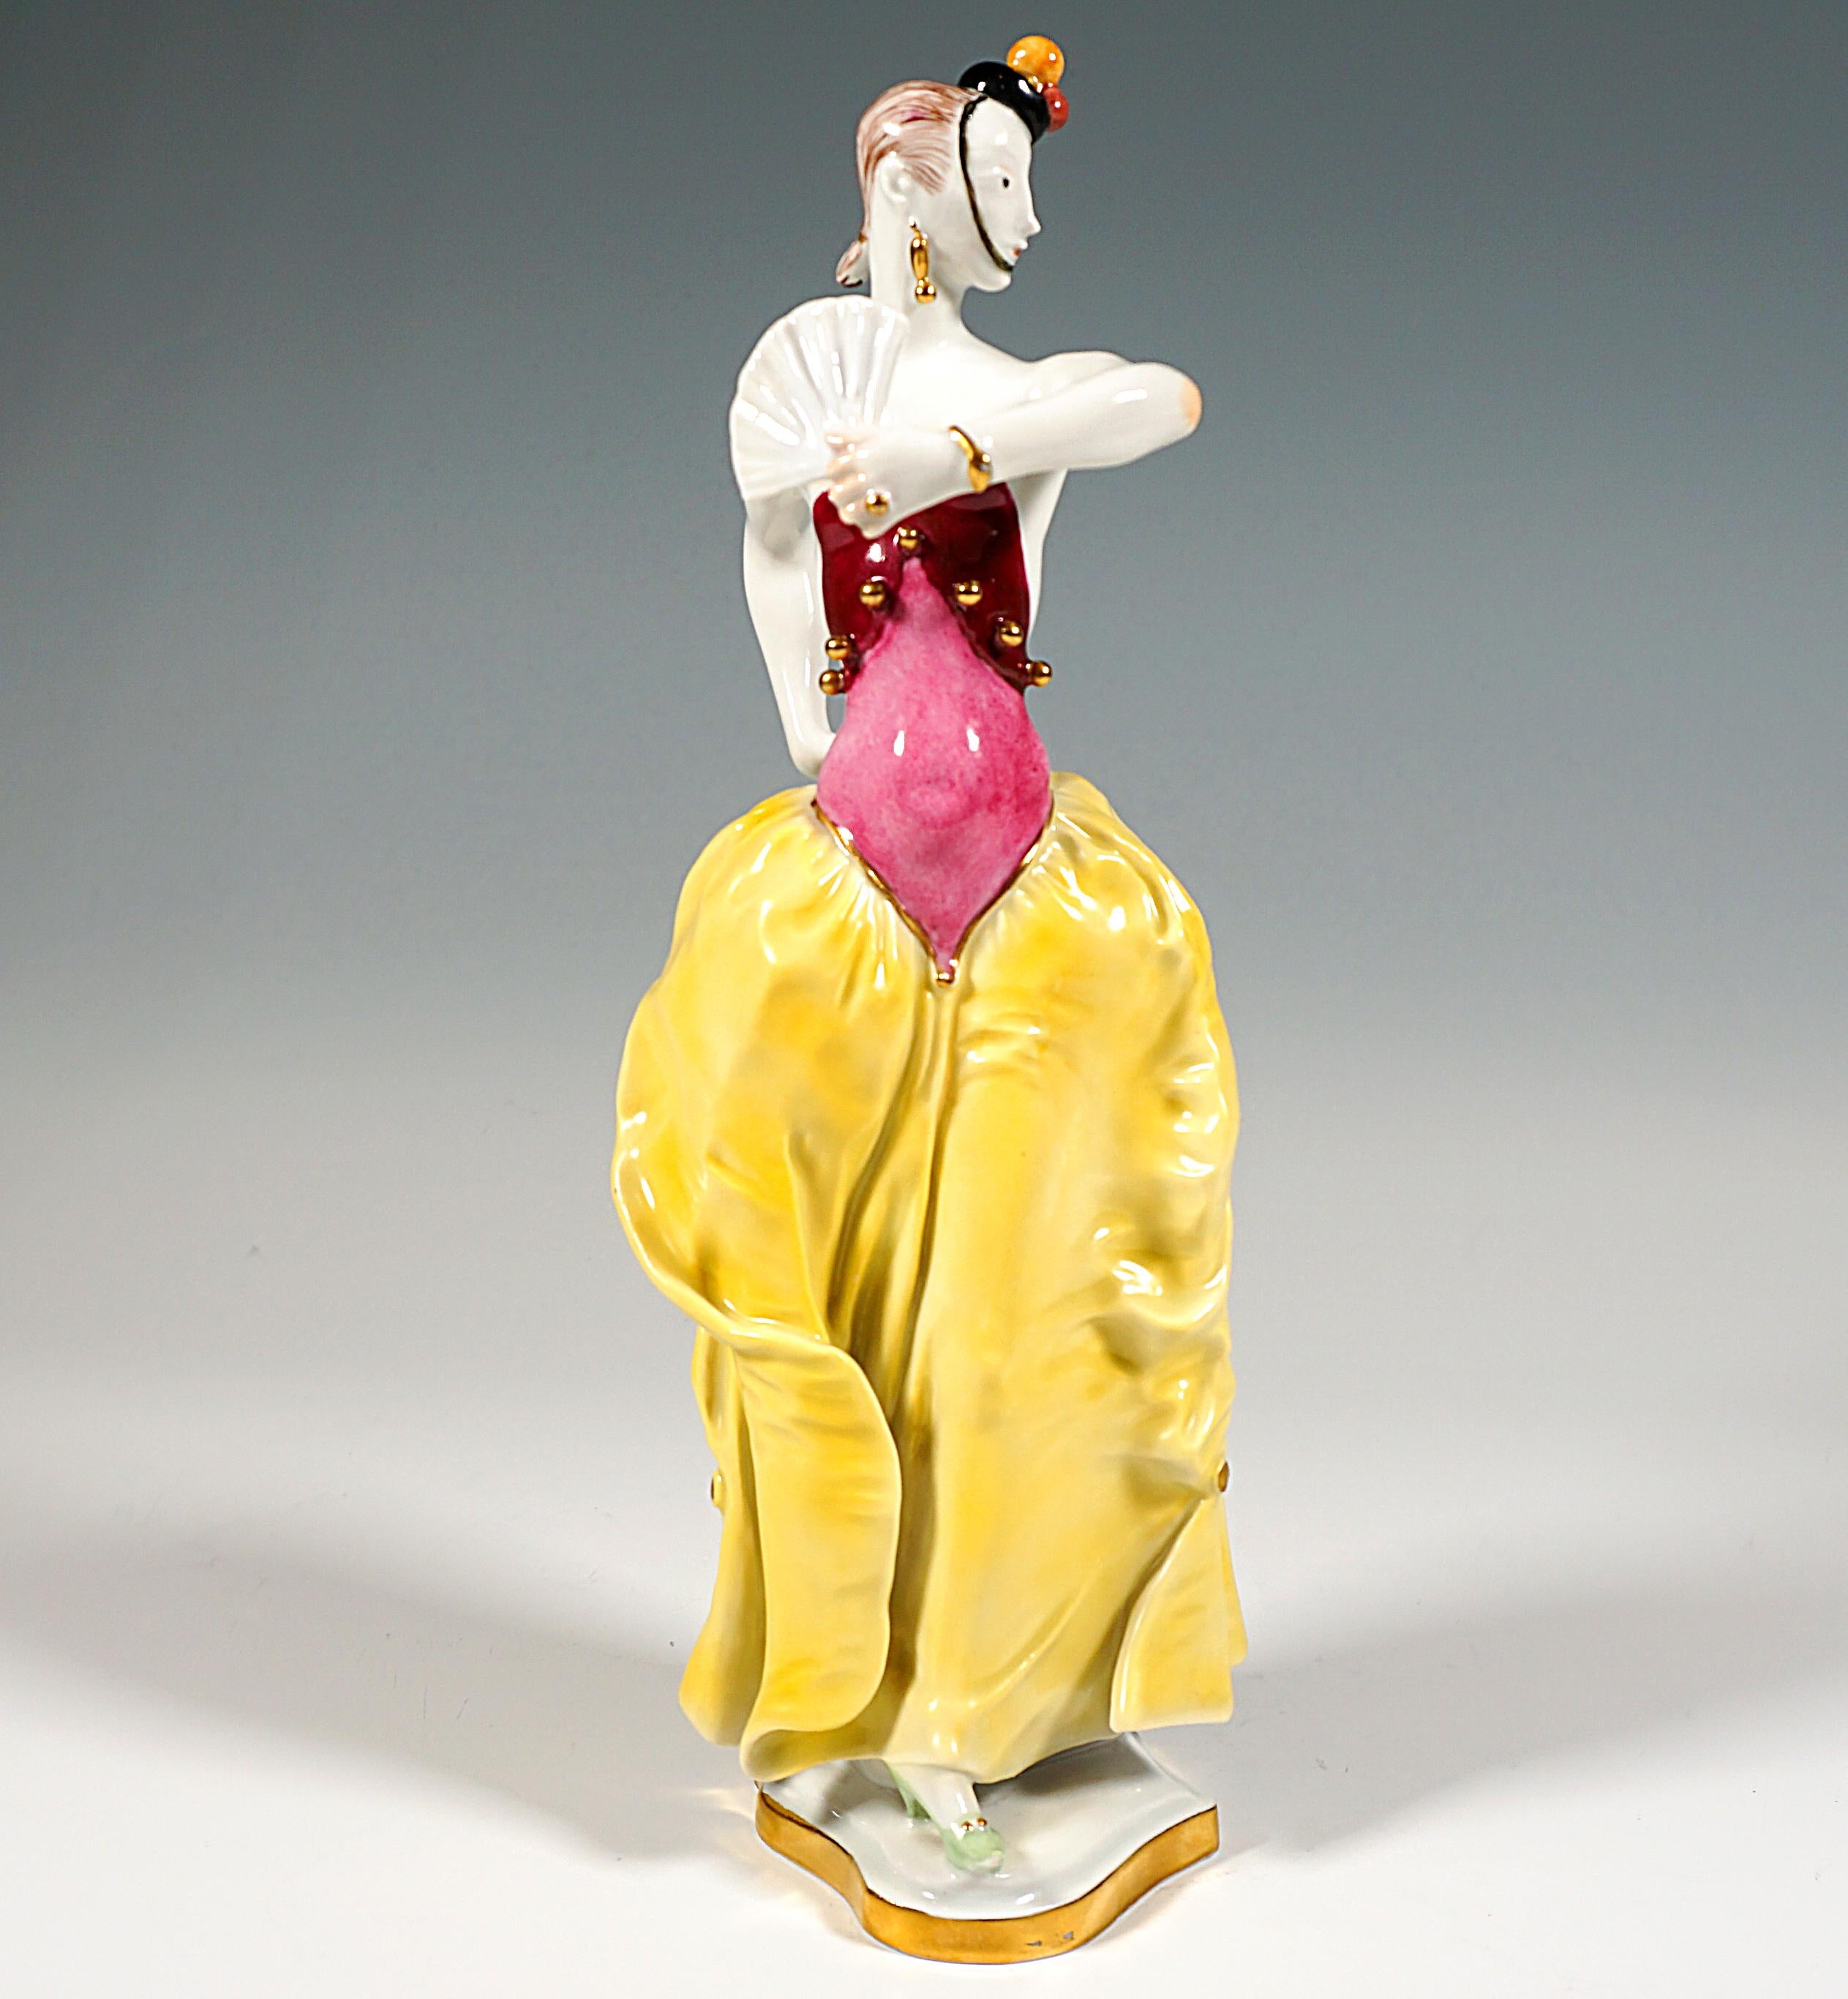 Excepcional figura de Meissen Porcelain:
Bailarina con falda abullonada alrededor de las caderas y top ajustado, sin tirantes y sin espalda, con botones dorados, posando con abanico y castañuelas, un sombrerito de borlas con una cinta apoyada en la